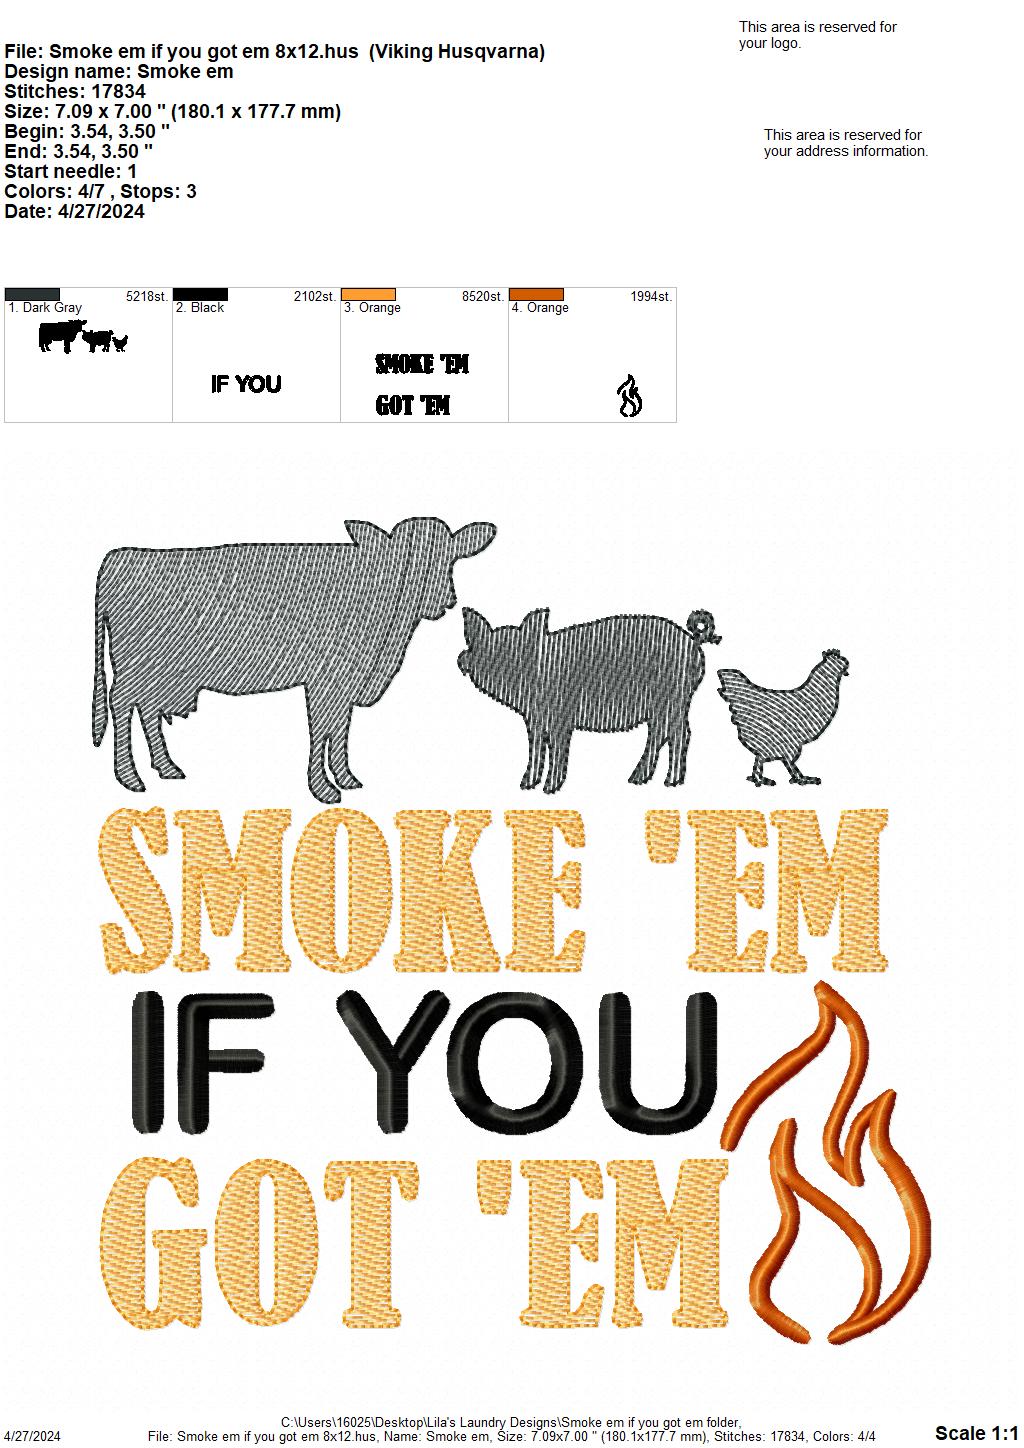 Smoke 'em if you got 'em - 4 Sizes - Digital Embroidery Design